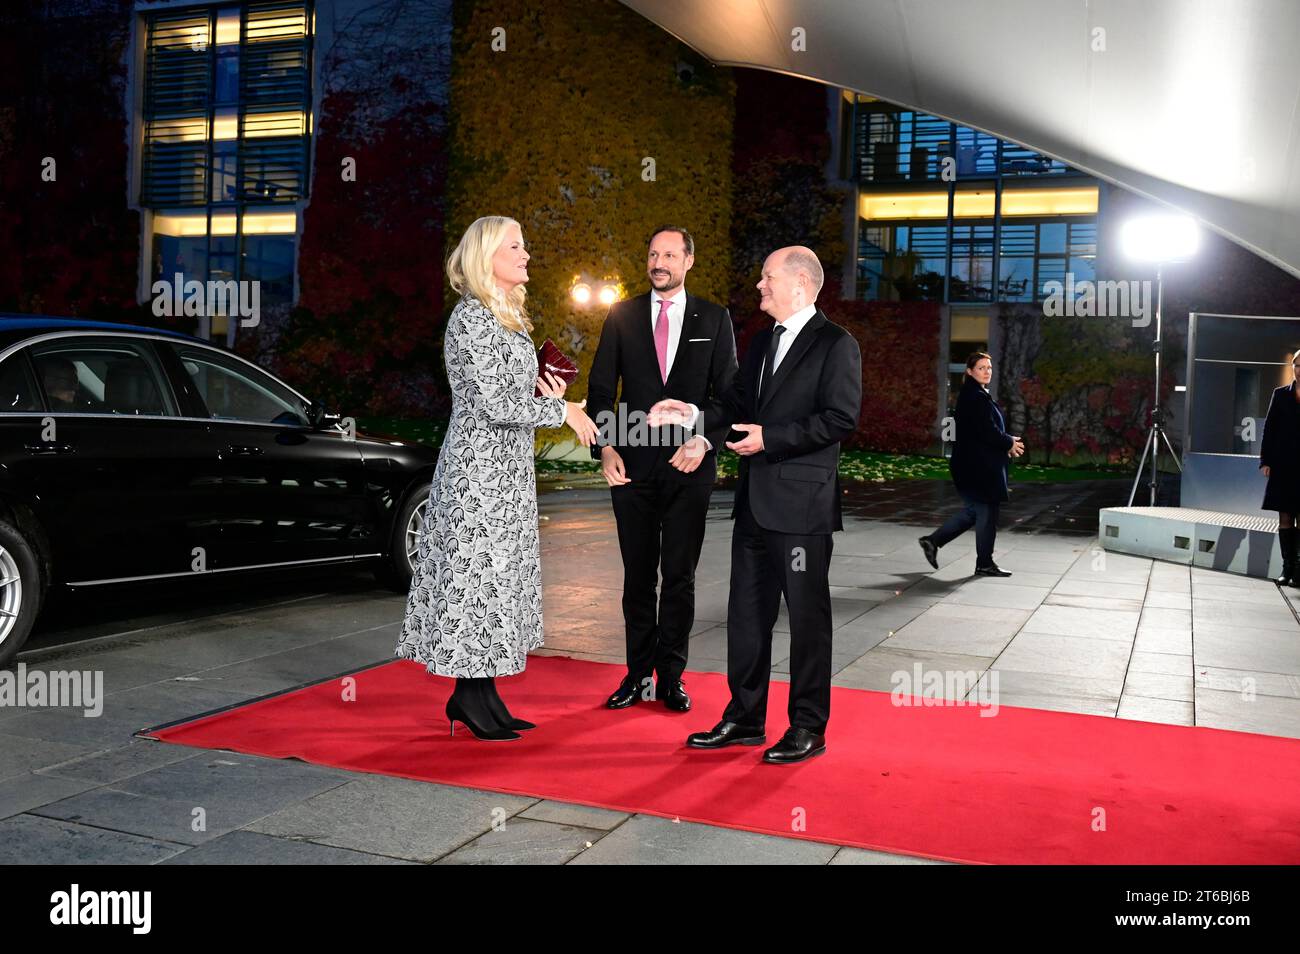 Kronprinzessin mette-Marit von Norwegen, Kronprinz Haakon von Norwegen und Olaf Scholz beim Empfang des Bundeskanzlers zu freundschaftlichen Gespräche Foto Stock